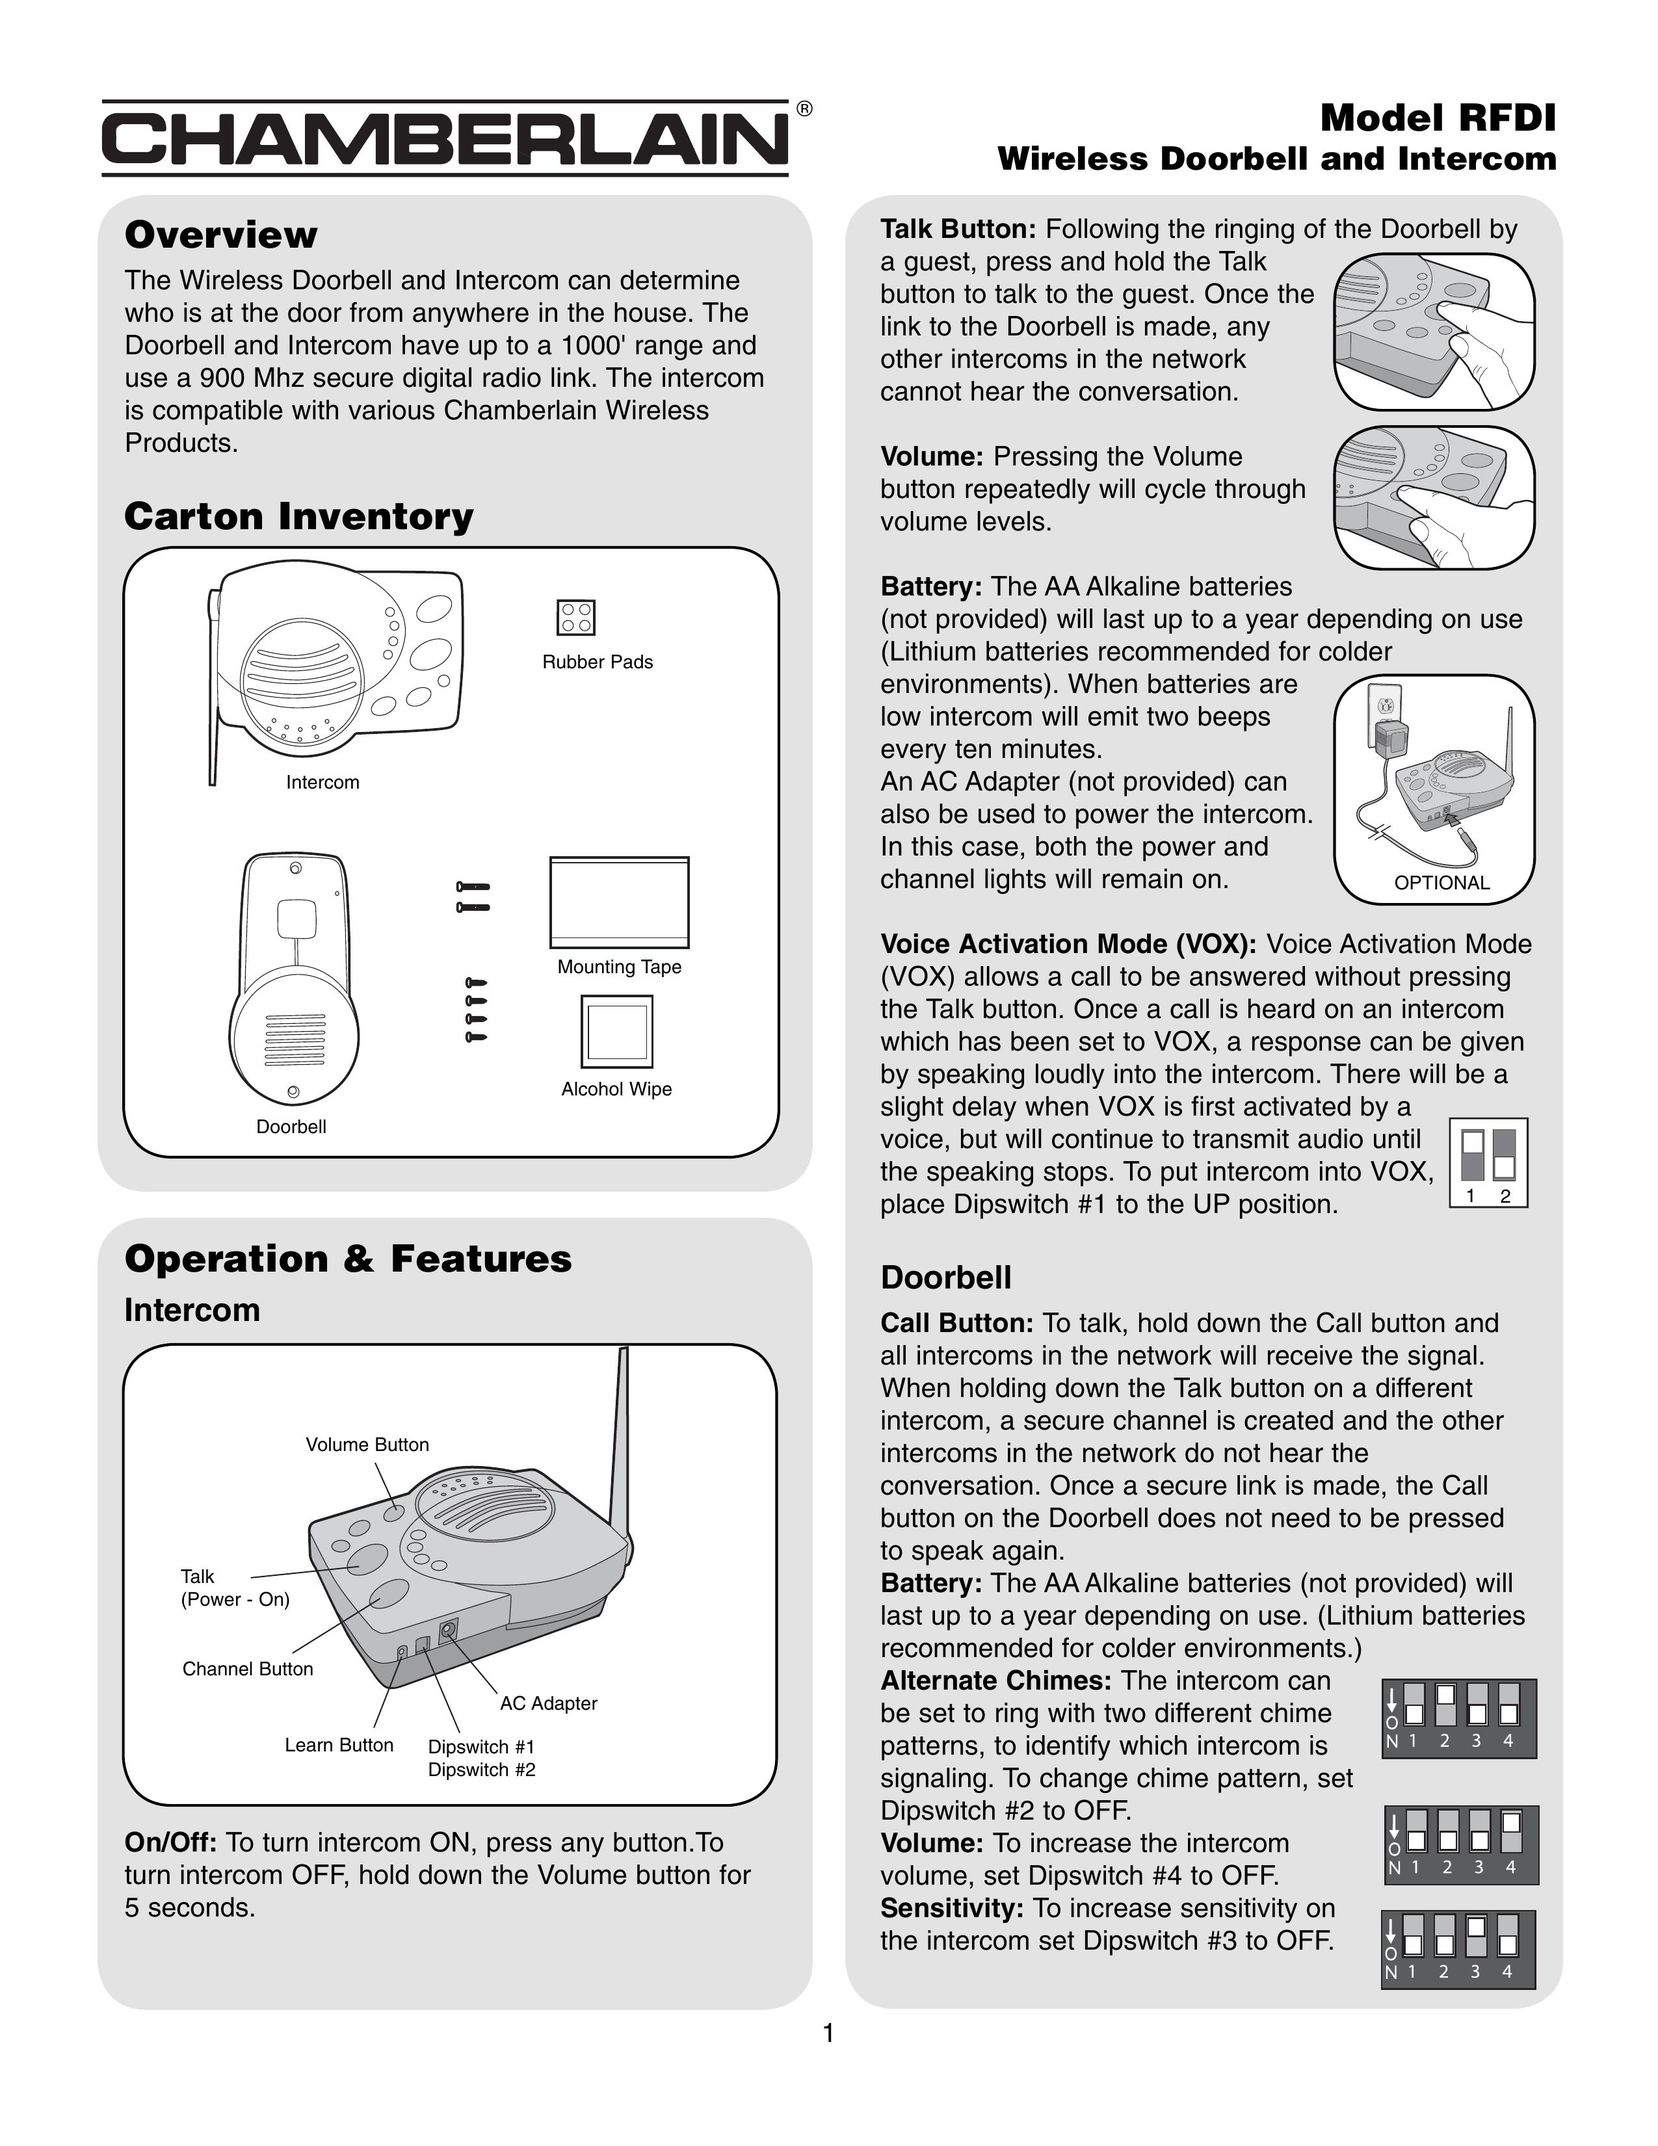 Chamberlain RFDI Intercom System User Manual